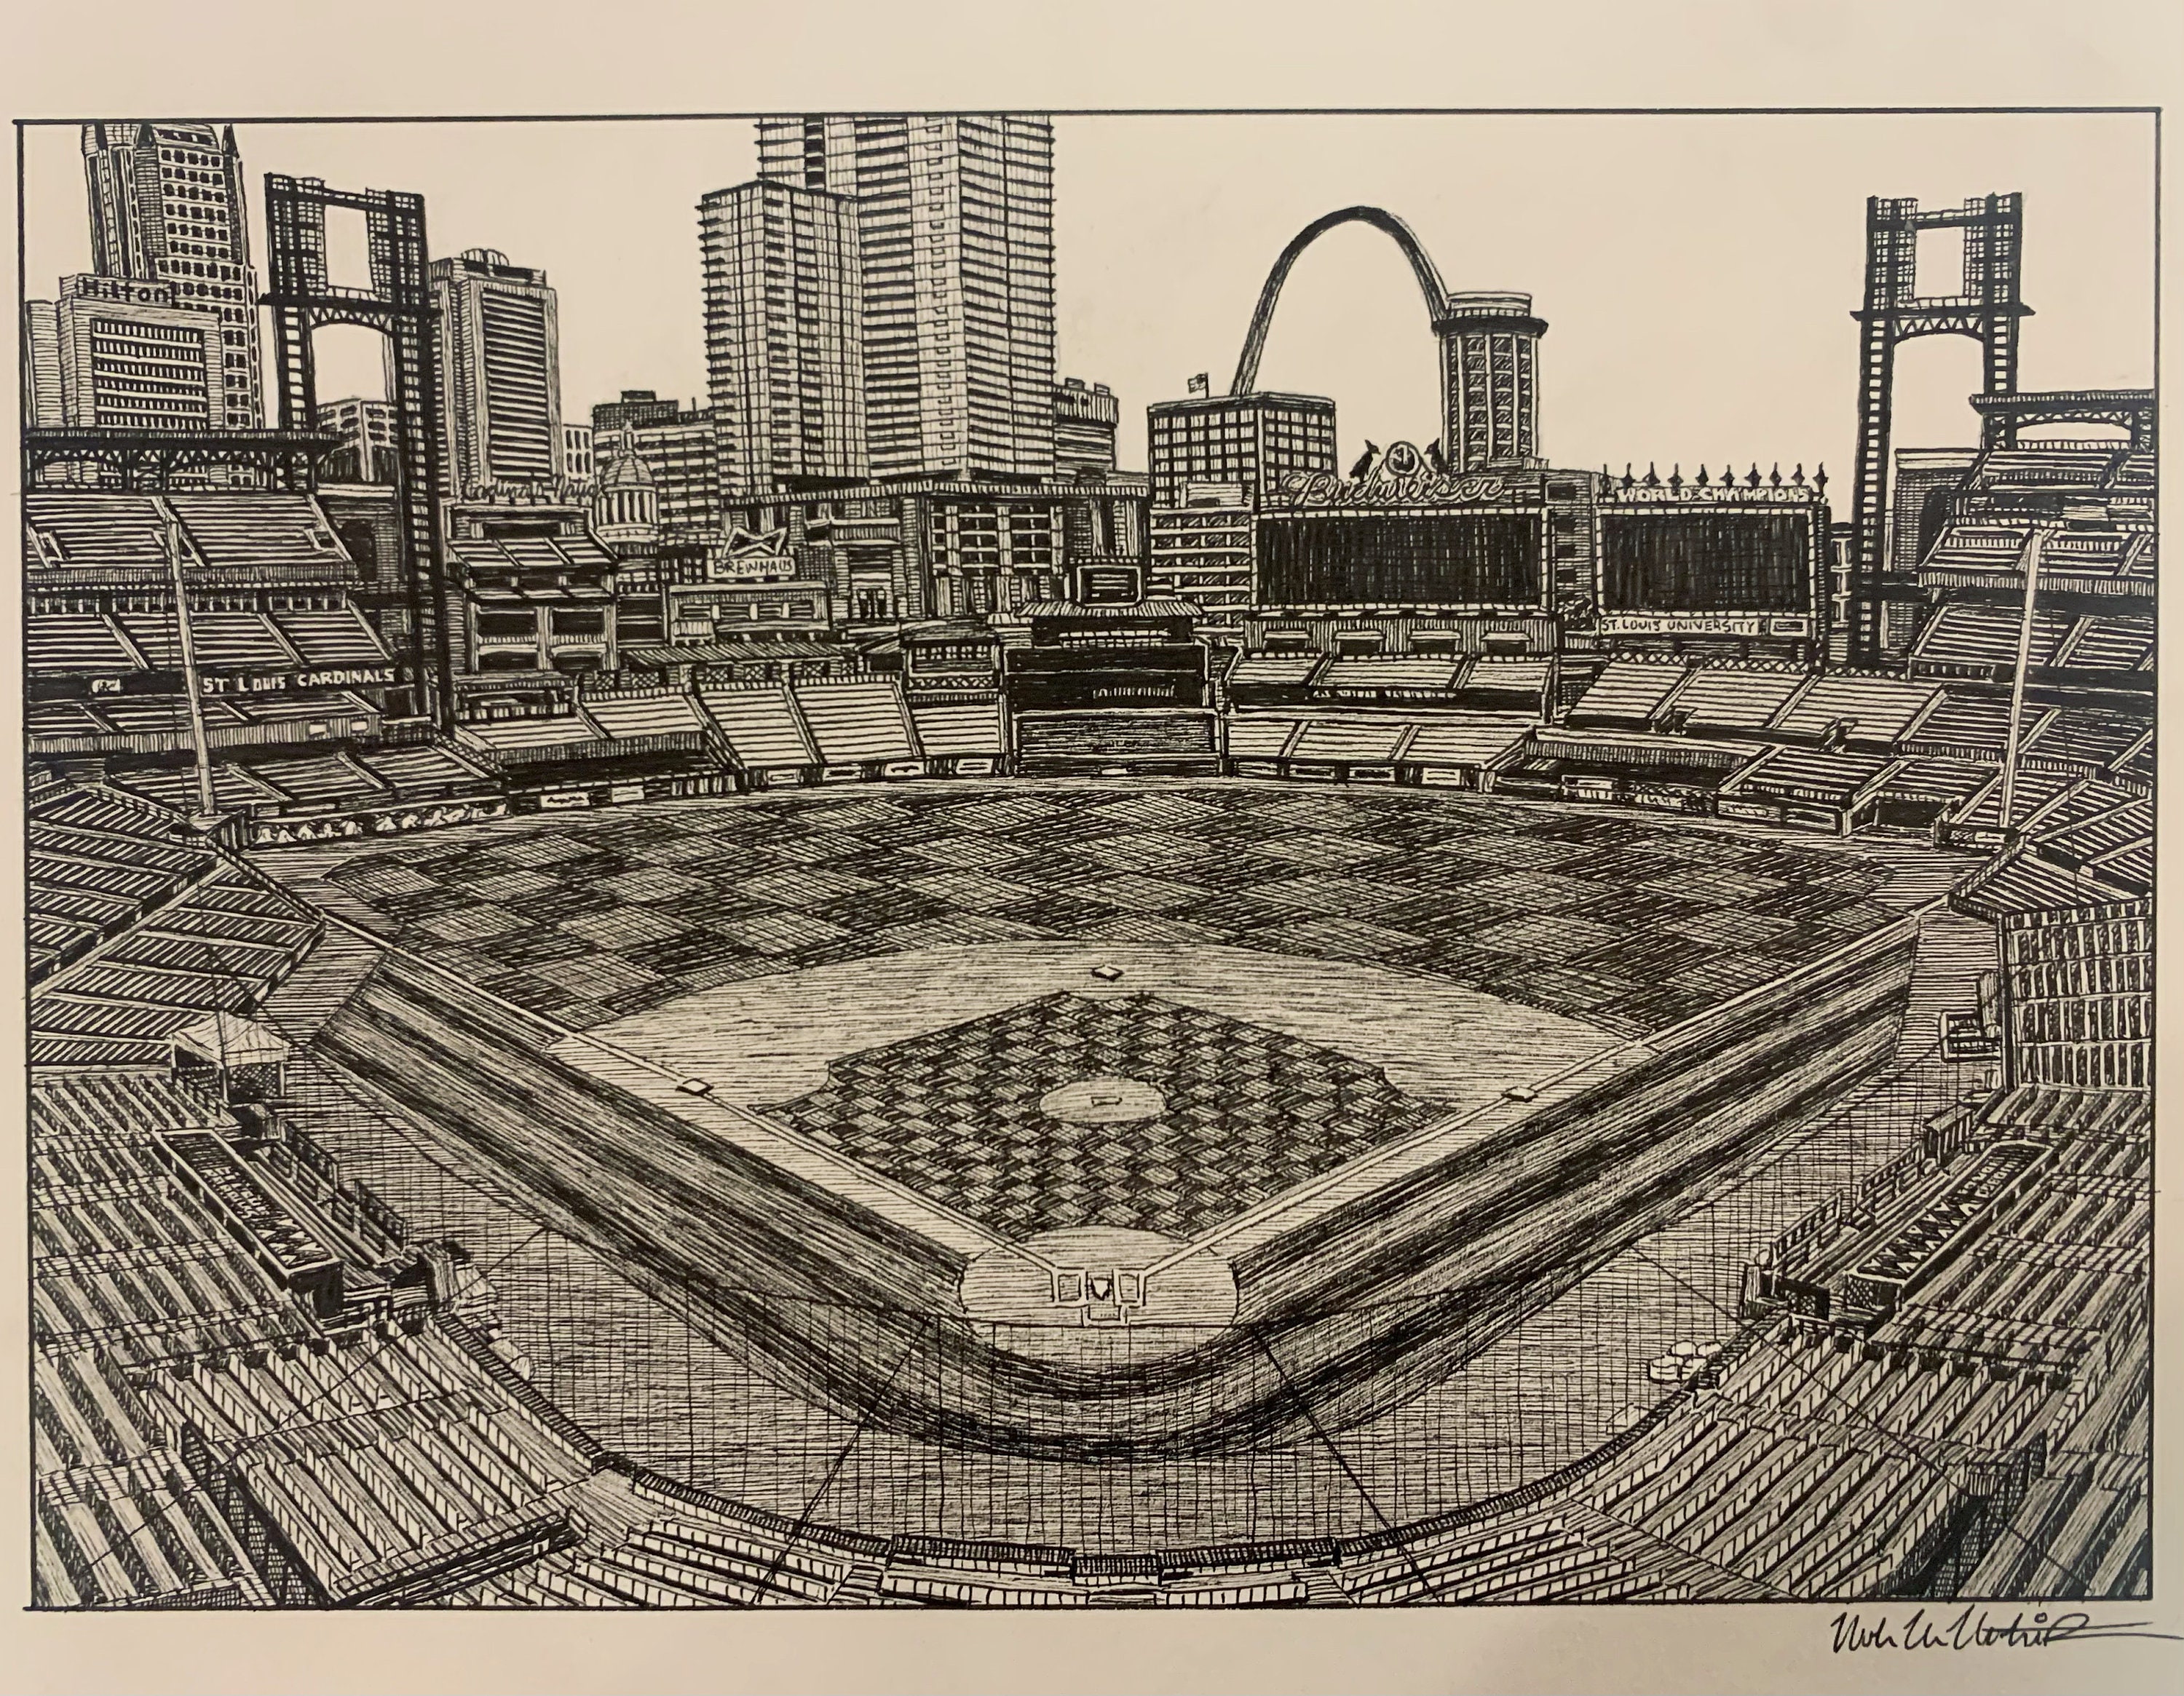 St. Louis Cardinals 8.5 x 11 Busch Stadium Sketch Art Print